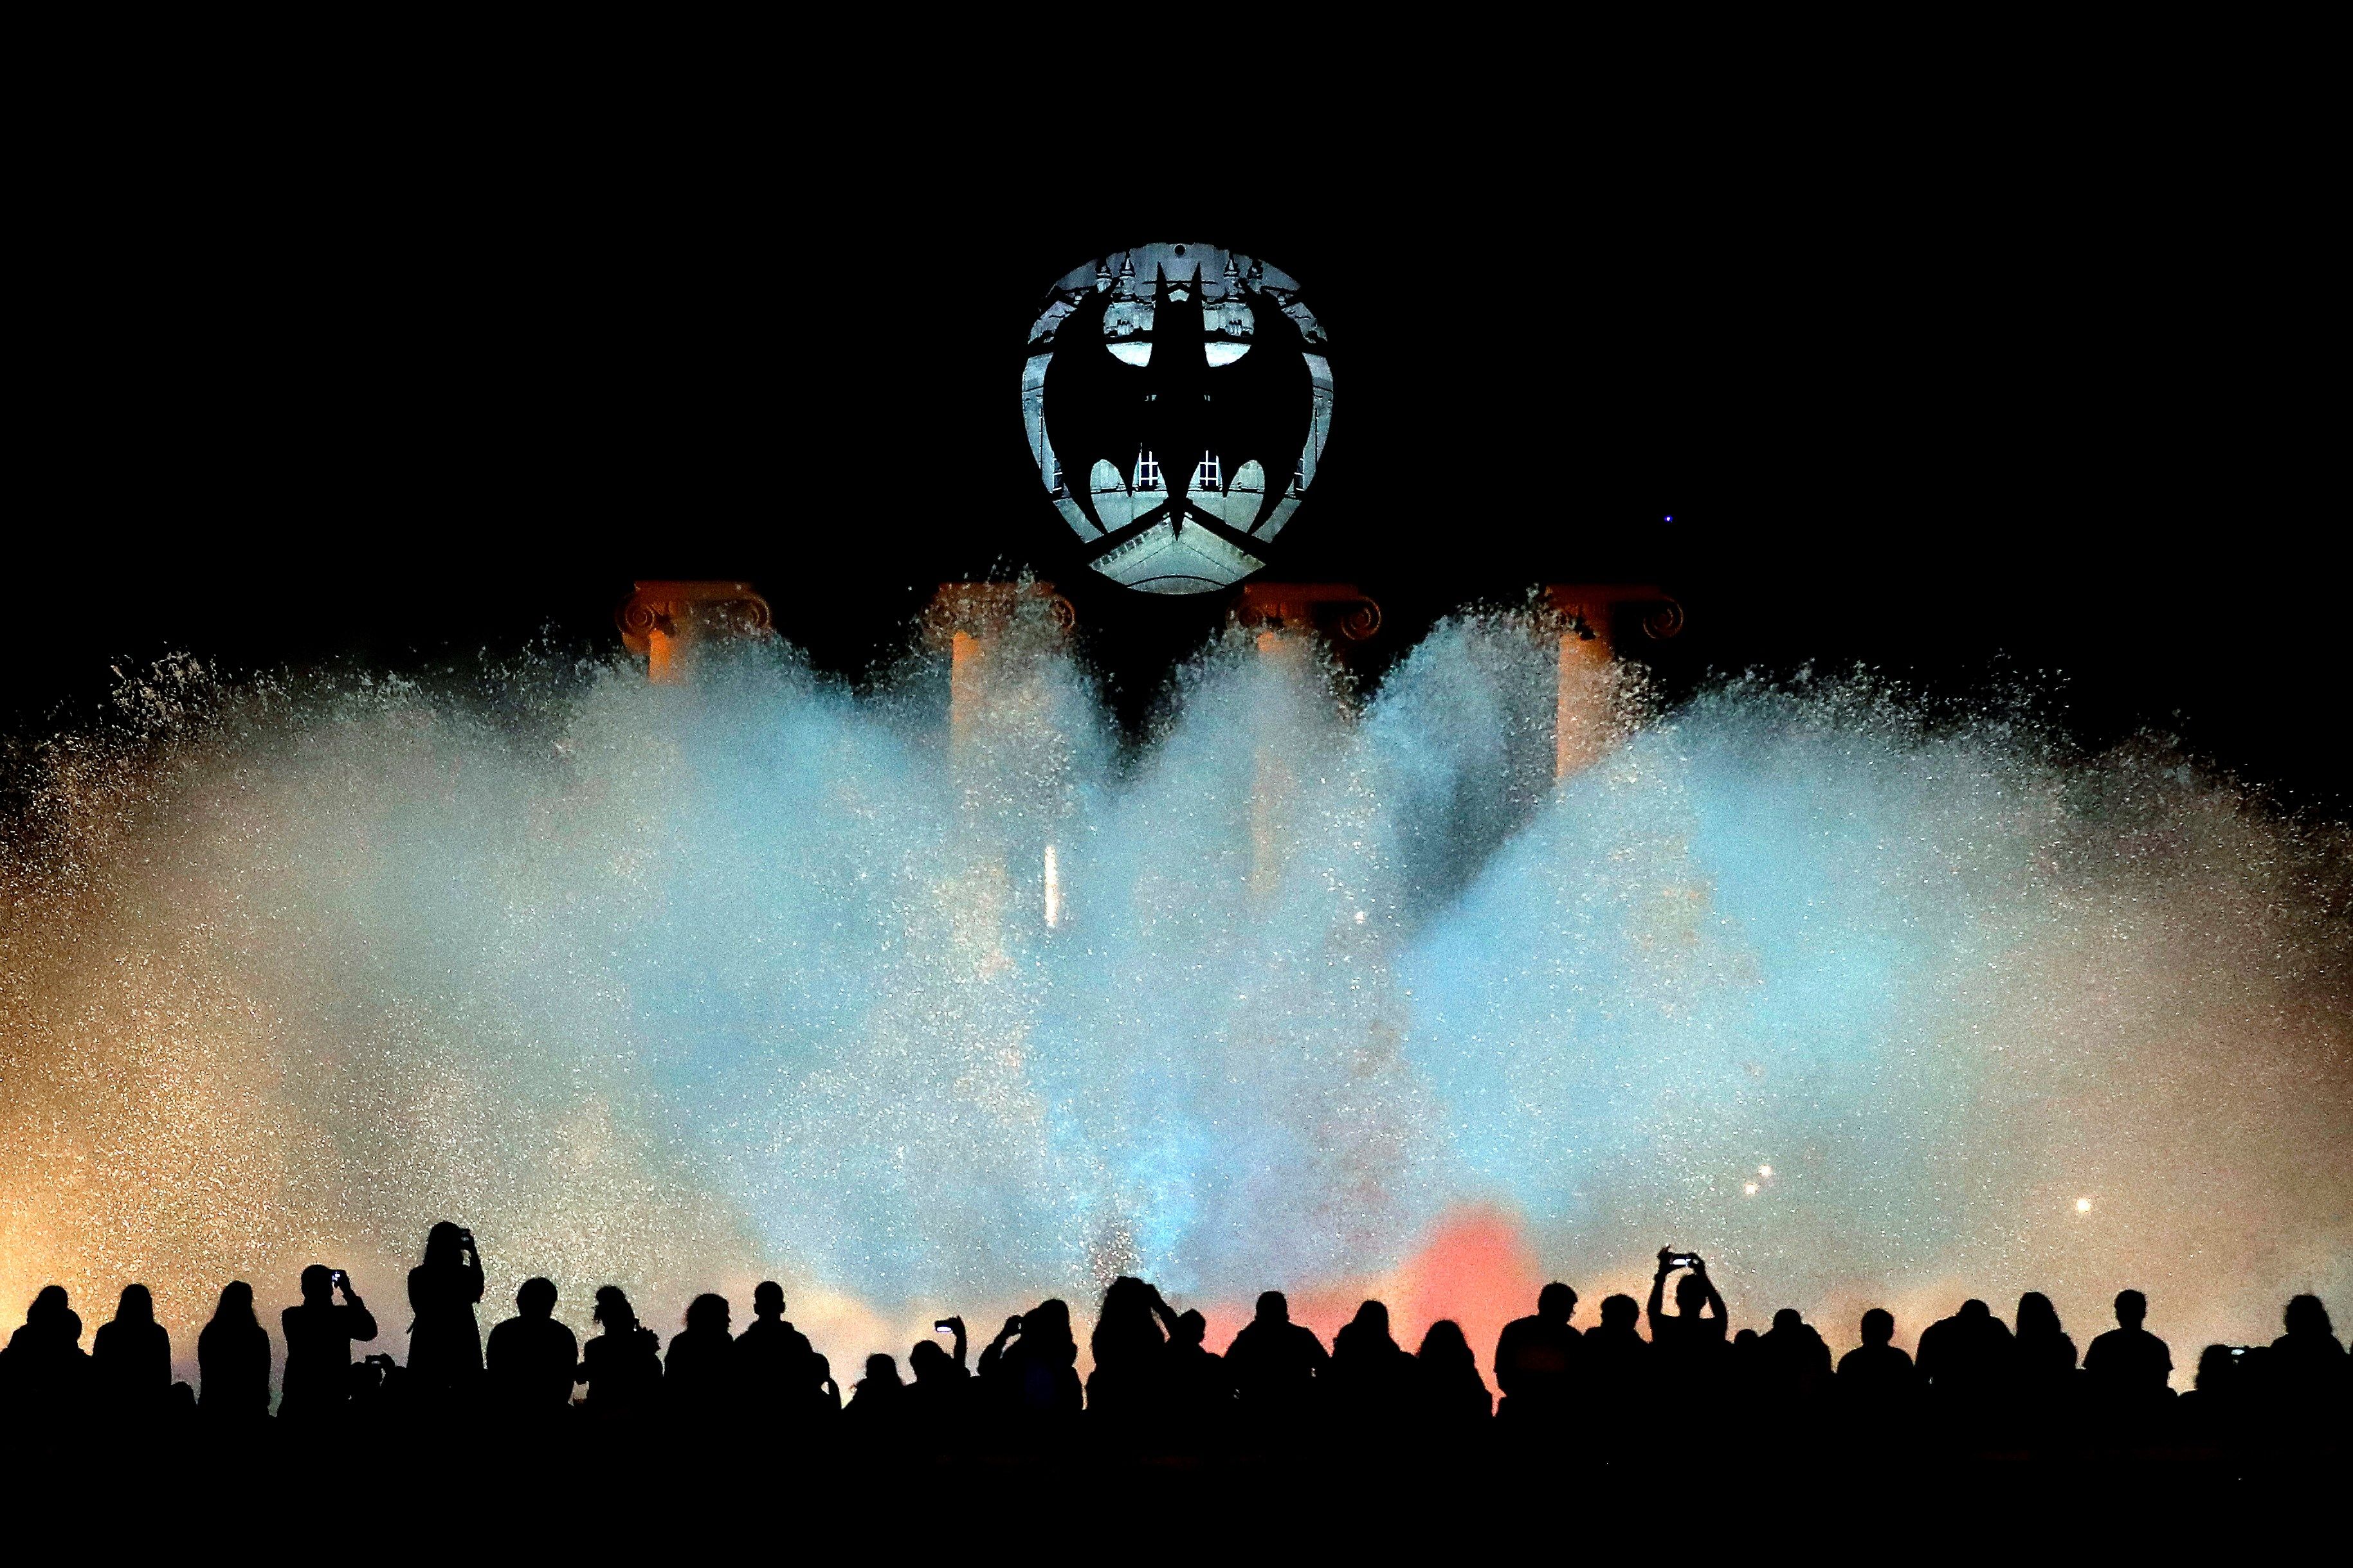 Centenares de personas observan el espectáculo de la Fuente Mágica de Montjuic mientras en la cúpula del Museu Nacional d'Art de Catalunya (MNAC), en Barcelona, se observa la "Batiseñal", el símbolo de Batman, que se proyectará en una catorcena de ciudades de todo el mundo por el 80 aniversario del Caballero Oscuro. (Foto Prensa Libre: EFE) 